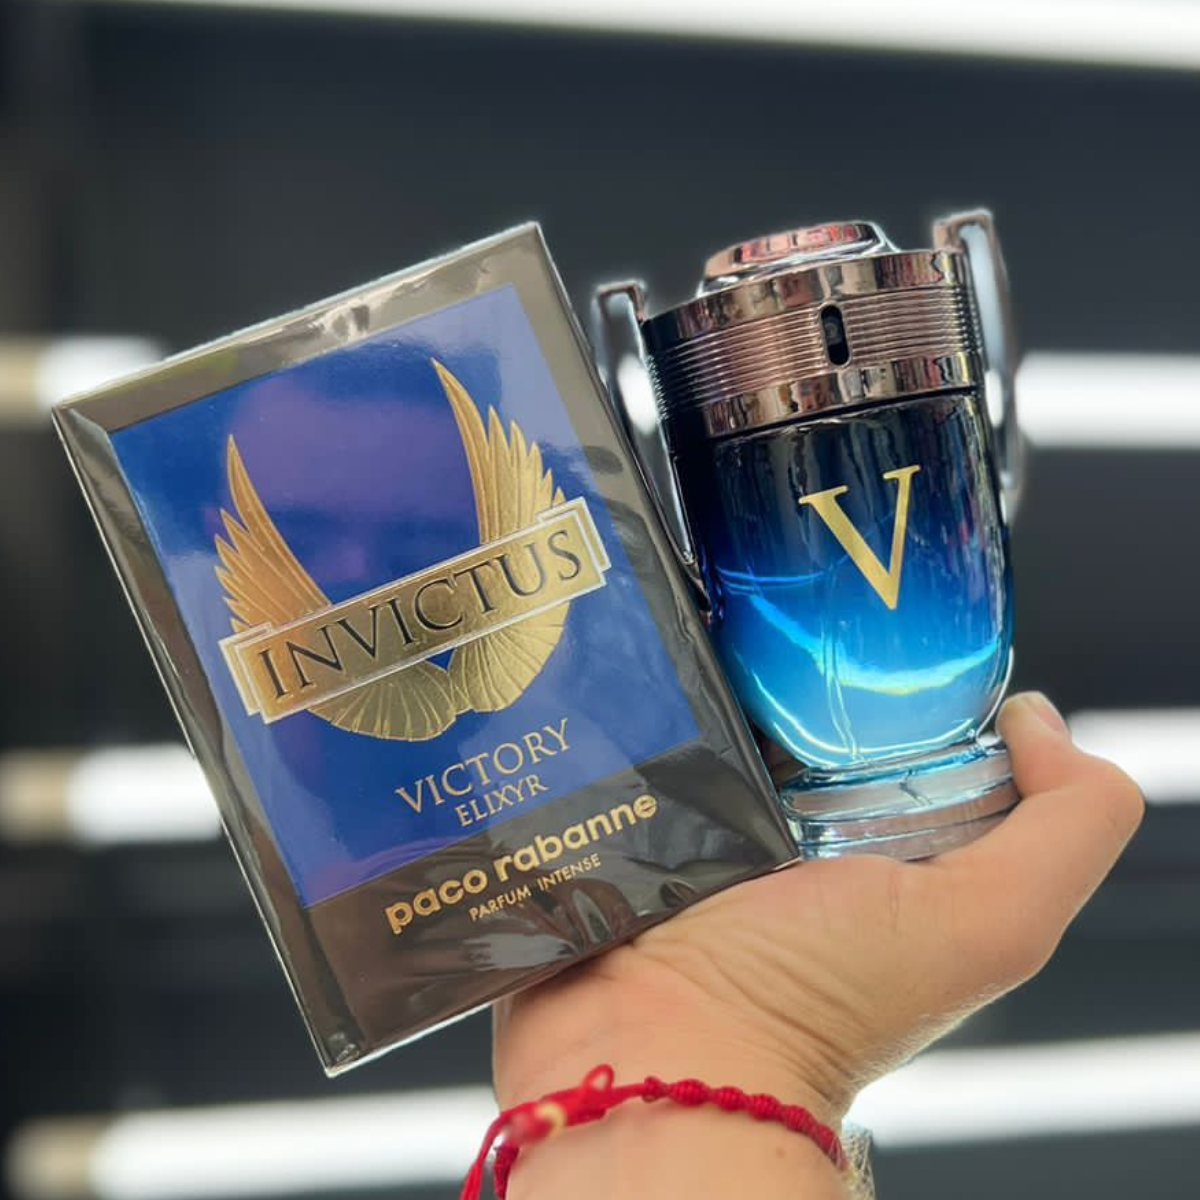 perfume invictus victory elixyr paco rabanne hombre Comprar en tienda onlineshoppingcenterg Colombia centro de compras en linea